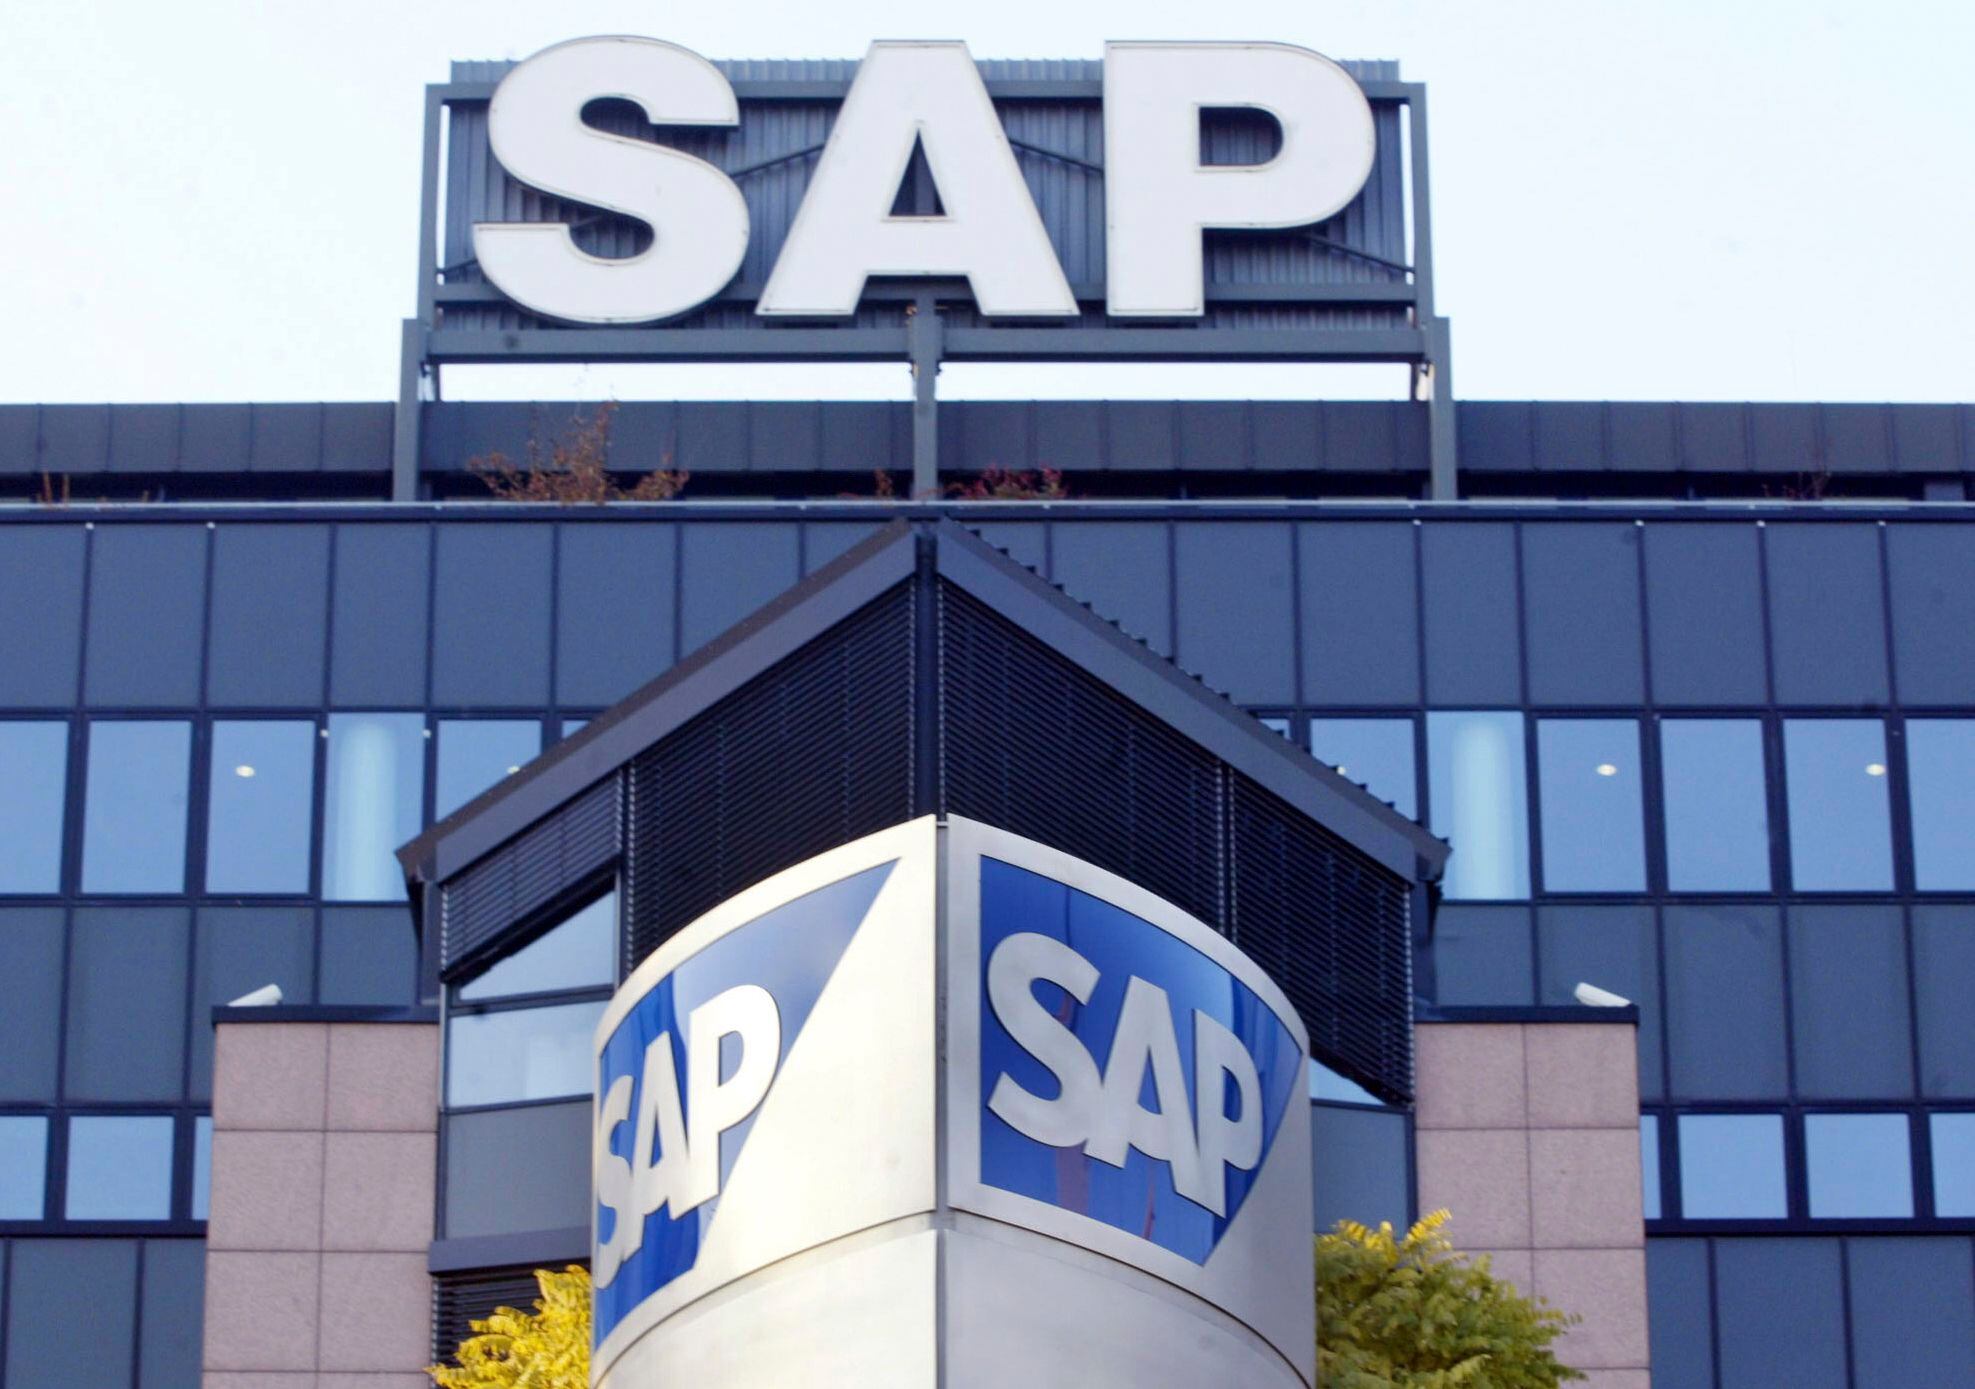 ARCHIVO - La sede de la firma alemana de software SAP en Walldorf, cerca de Heidelberg, aparece en esta imagen de archivo del 5 de noviembre de 2003. (AP Foto/Michael Probst,archivo)